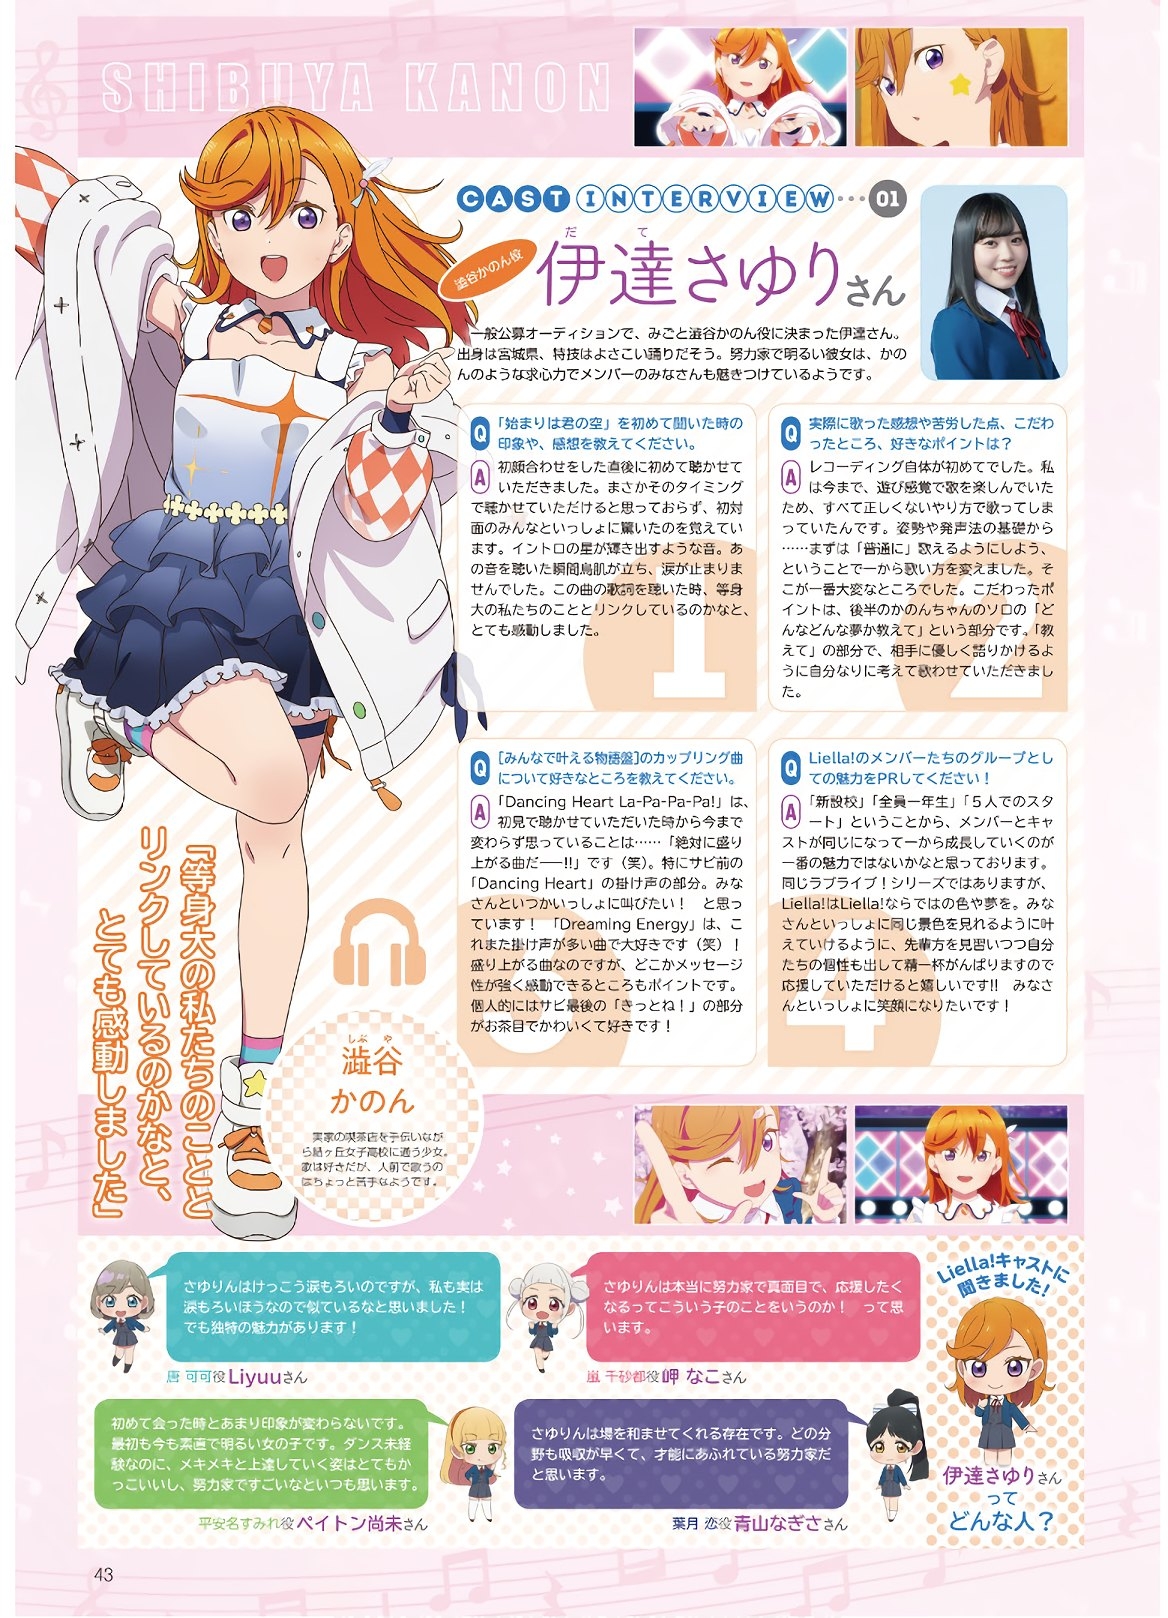 Dengeki G's Magazine #286 - May 2021 40